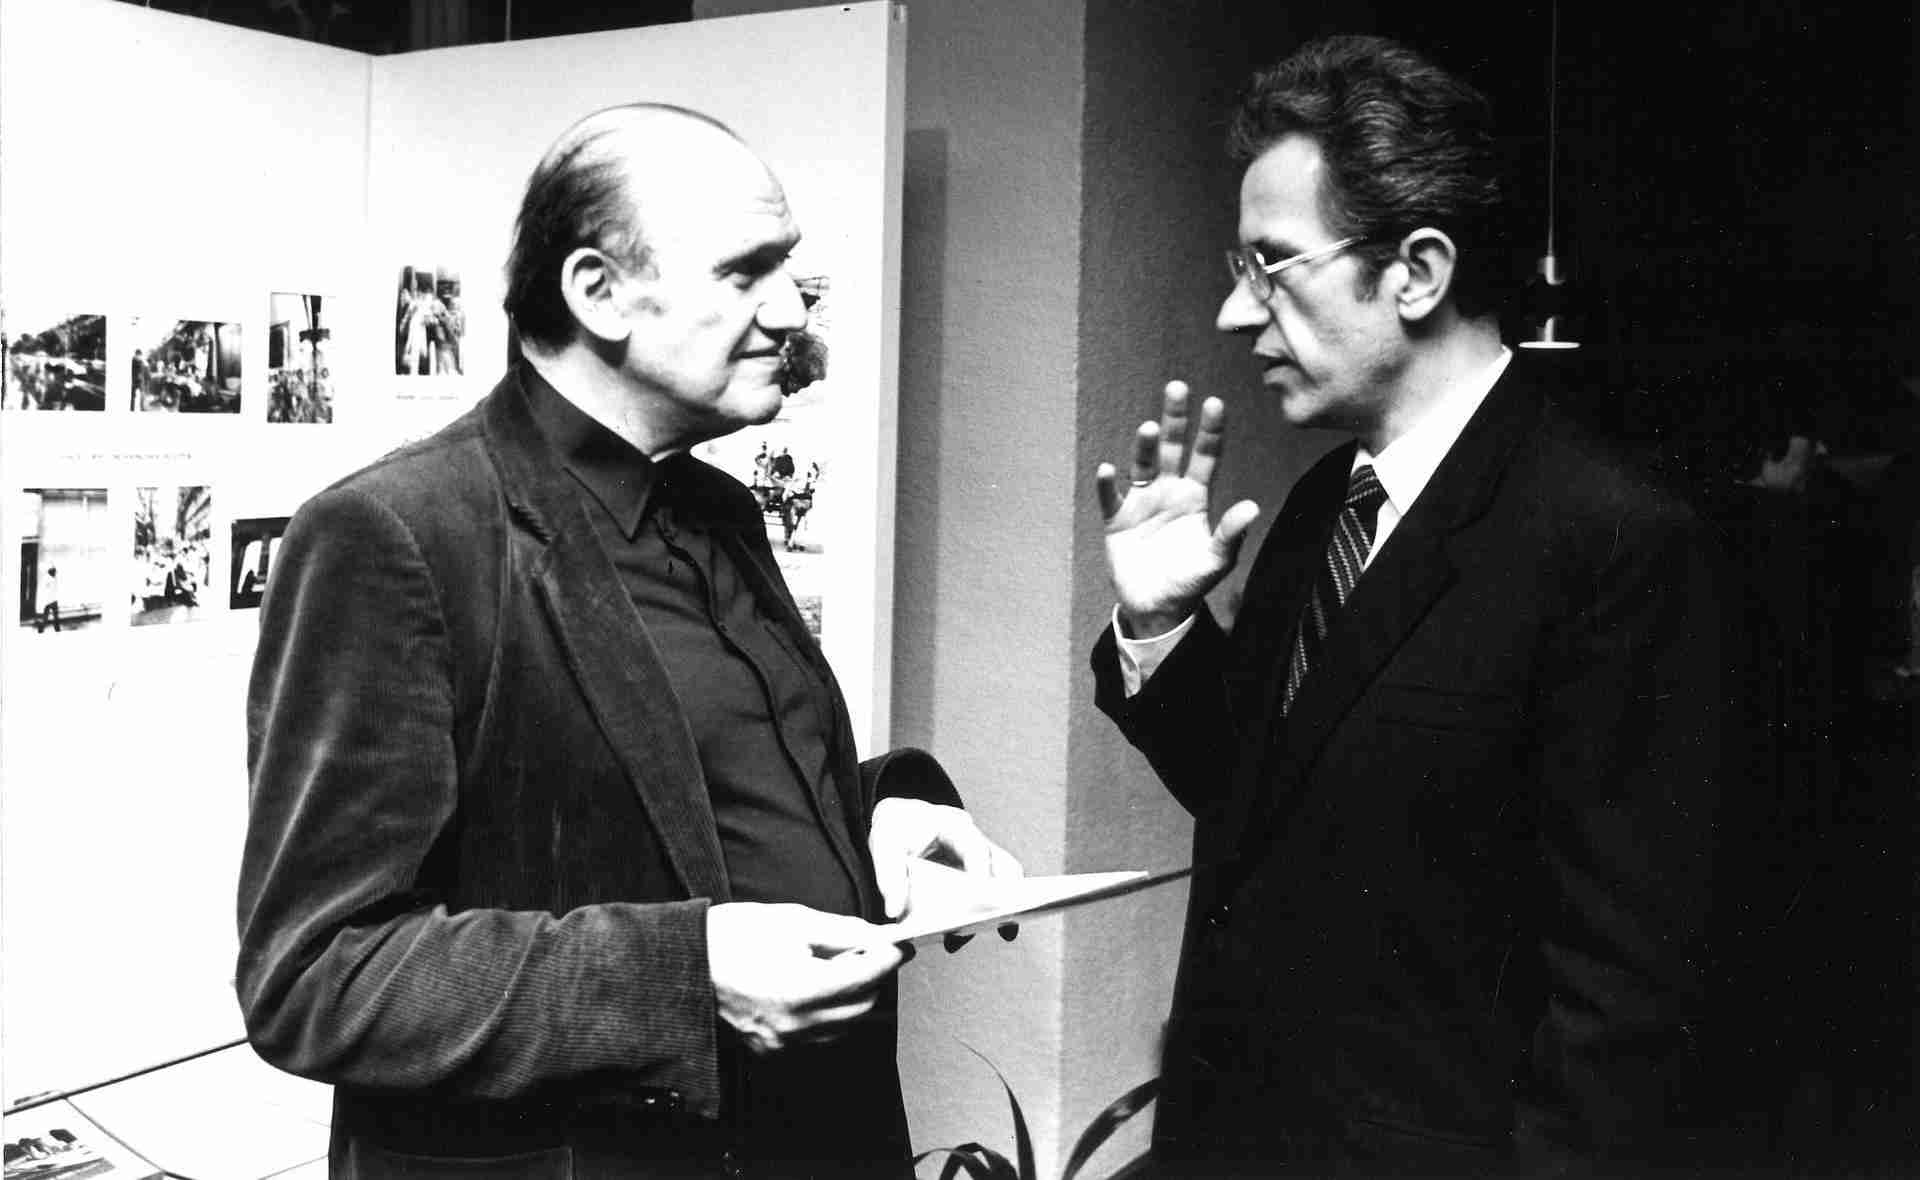 (c) Archivfoto CHB: Franz Fühmann (links) nach Lesung im Haus der ungarischen Kultur, Berlin 